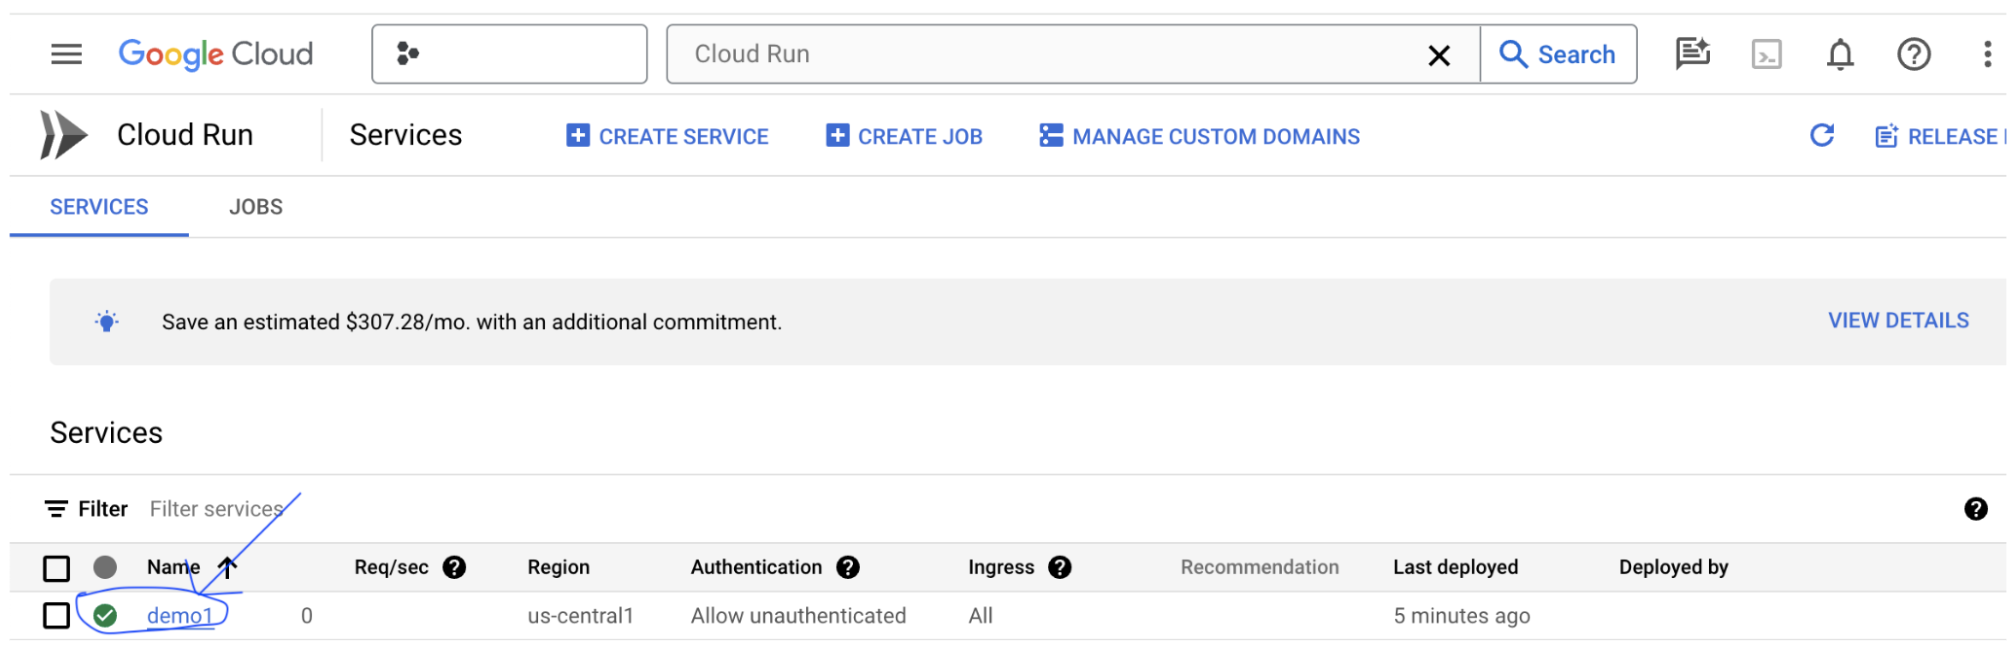 Google Cloud 控制台 Cloud Run 清單